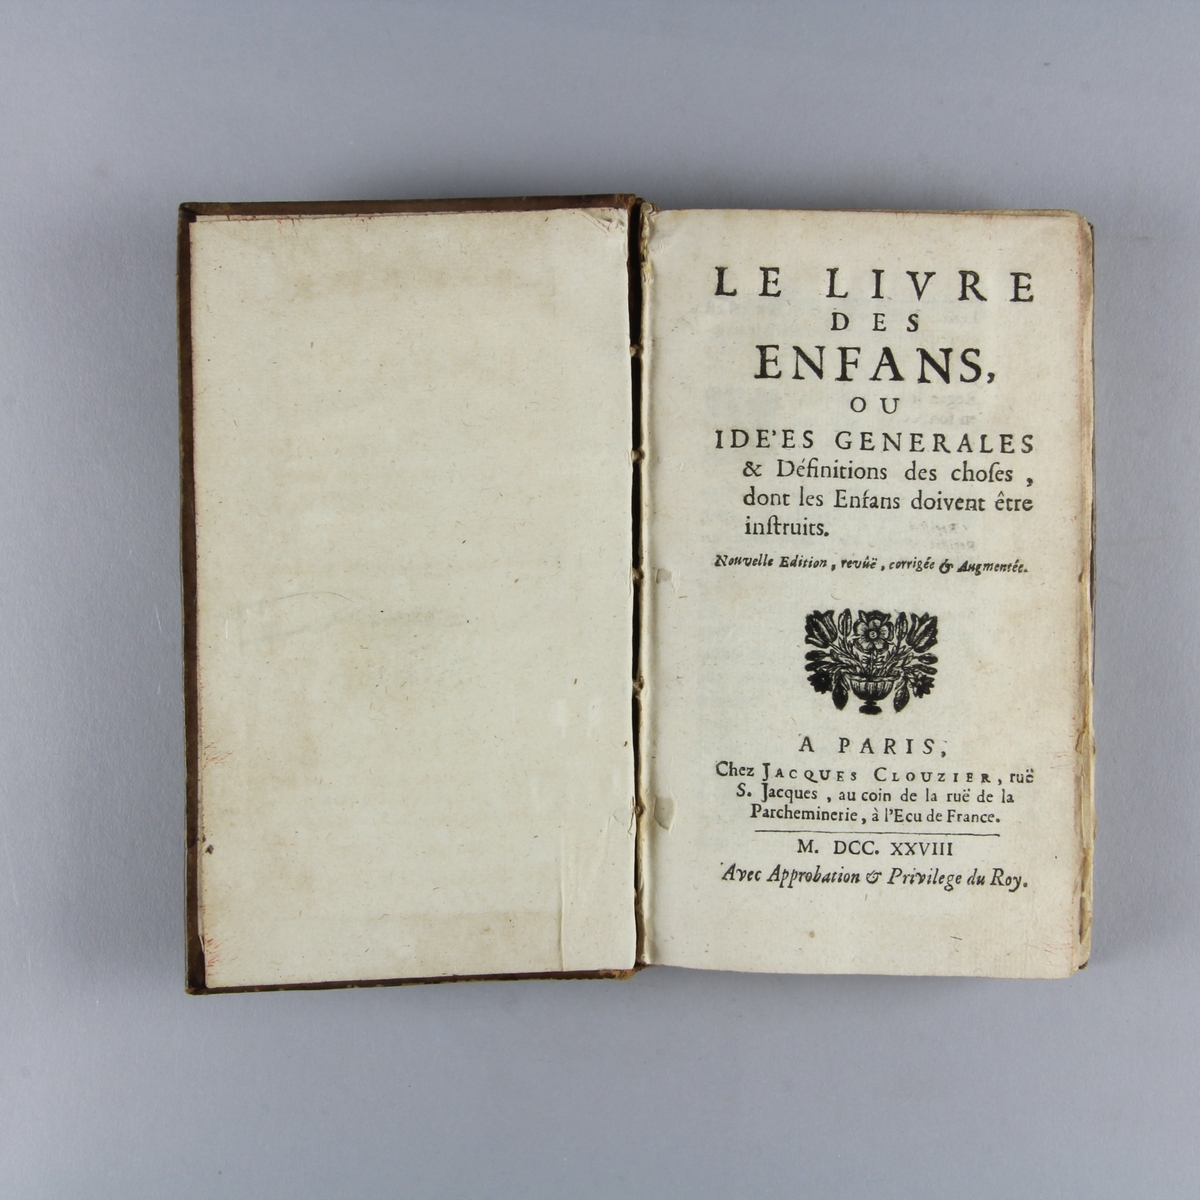 Bok, helfranskt band, "Les livres des enfans". Skinnband med guldpräglad rygg i fem upphöjda bind, skuret rödstänkt snitt.